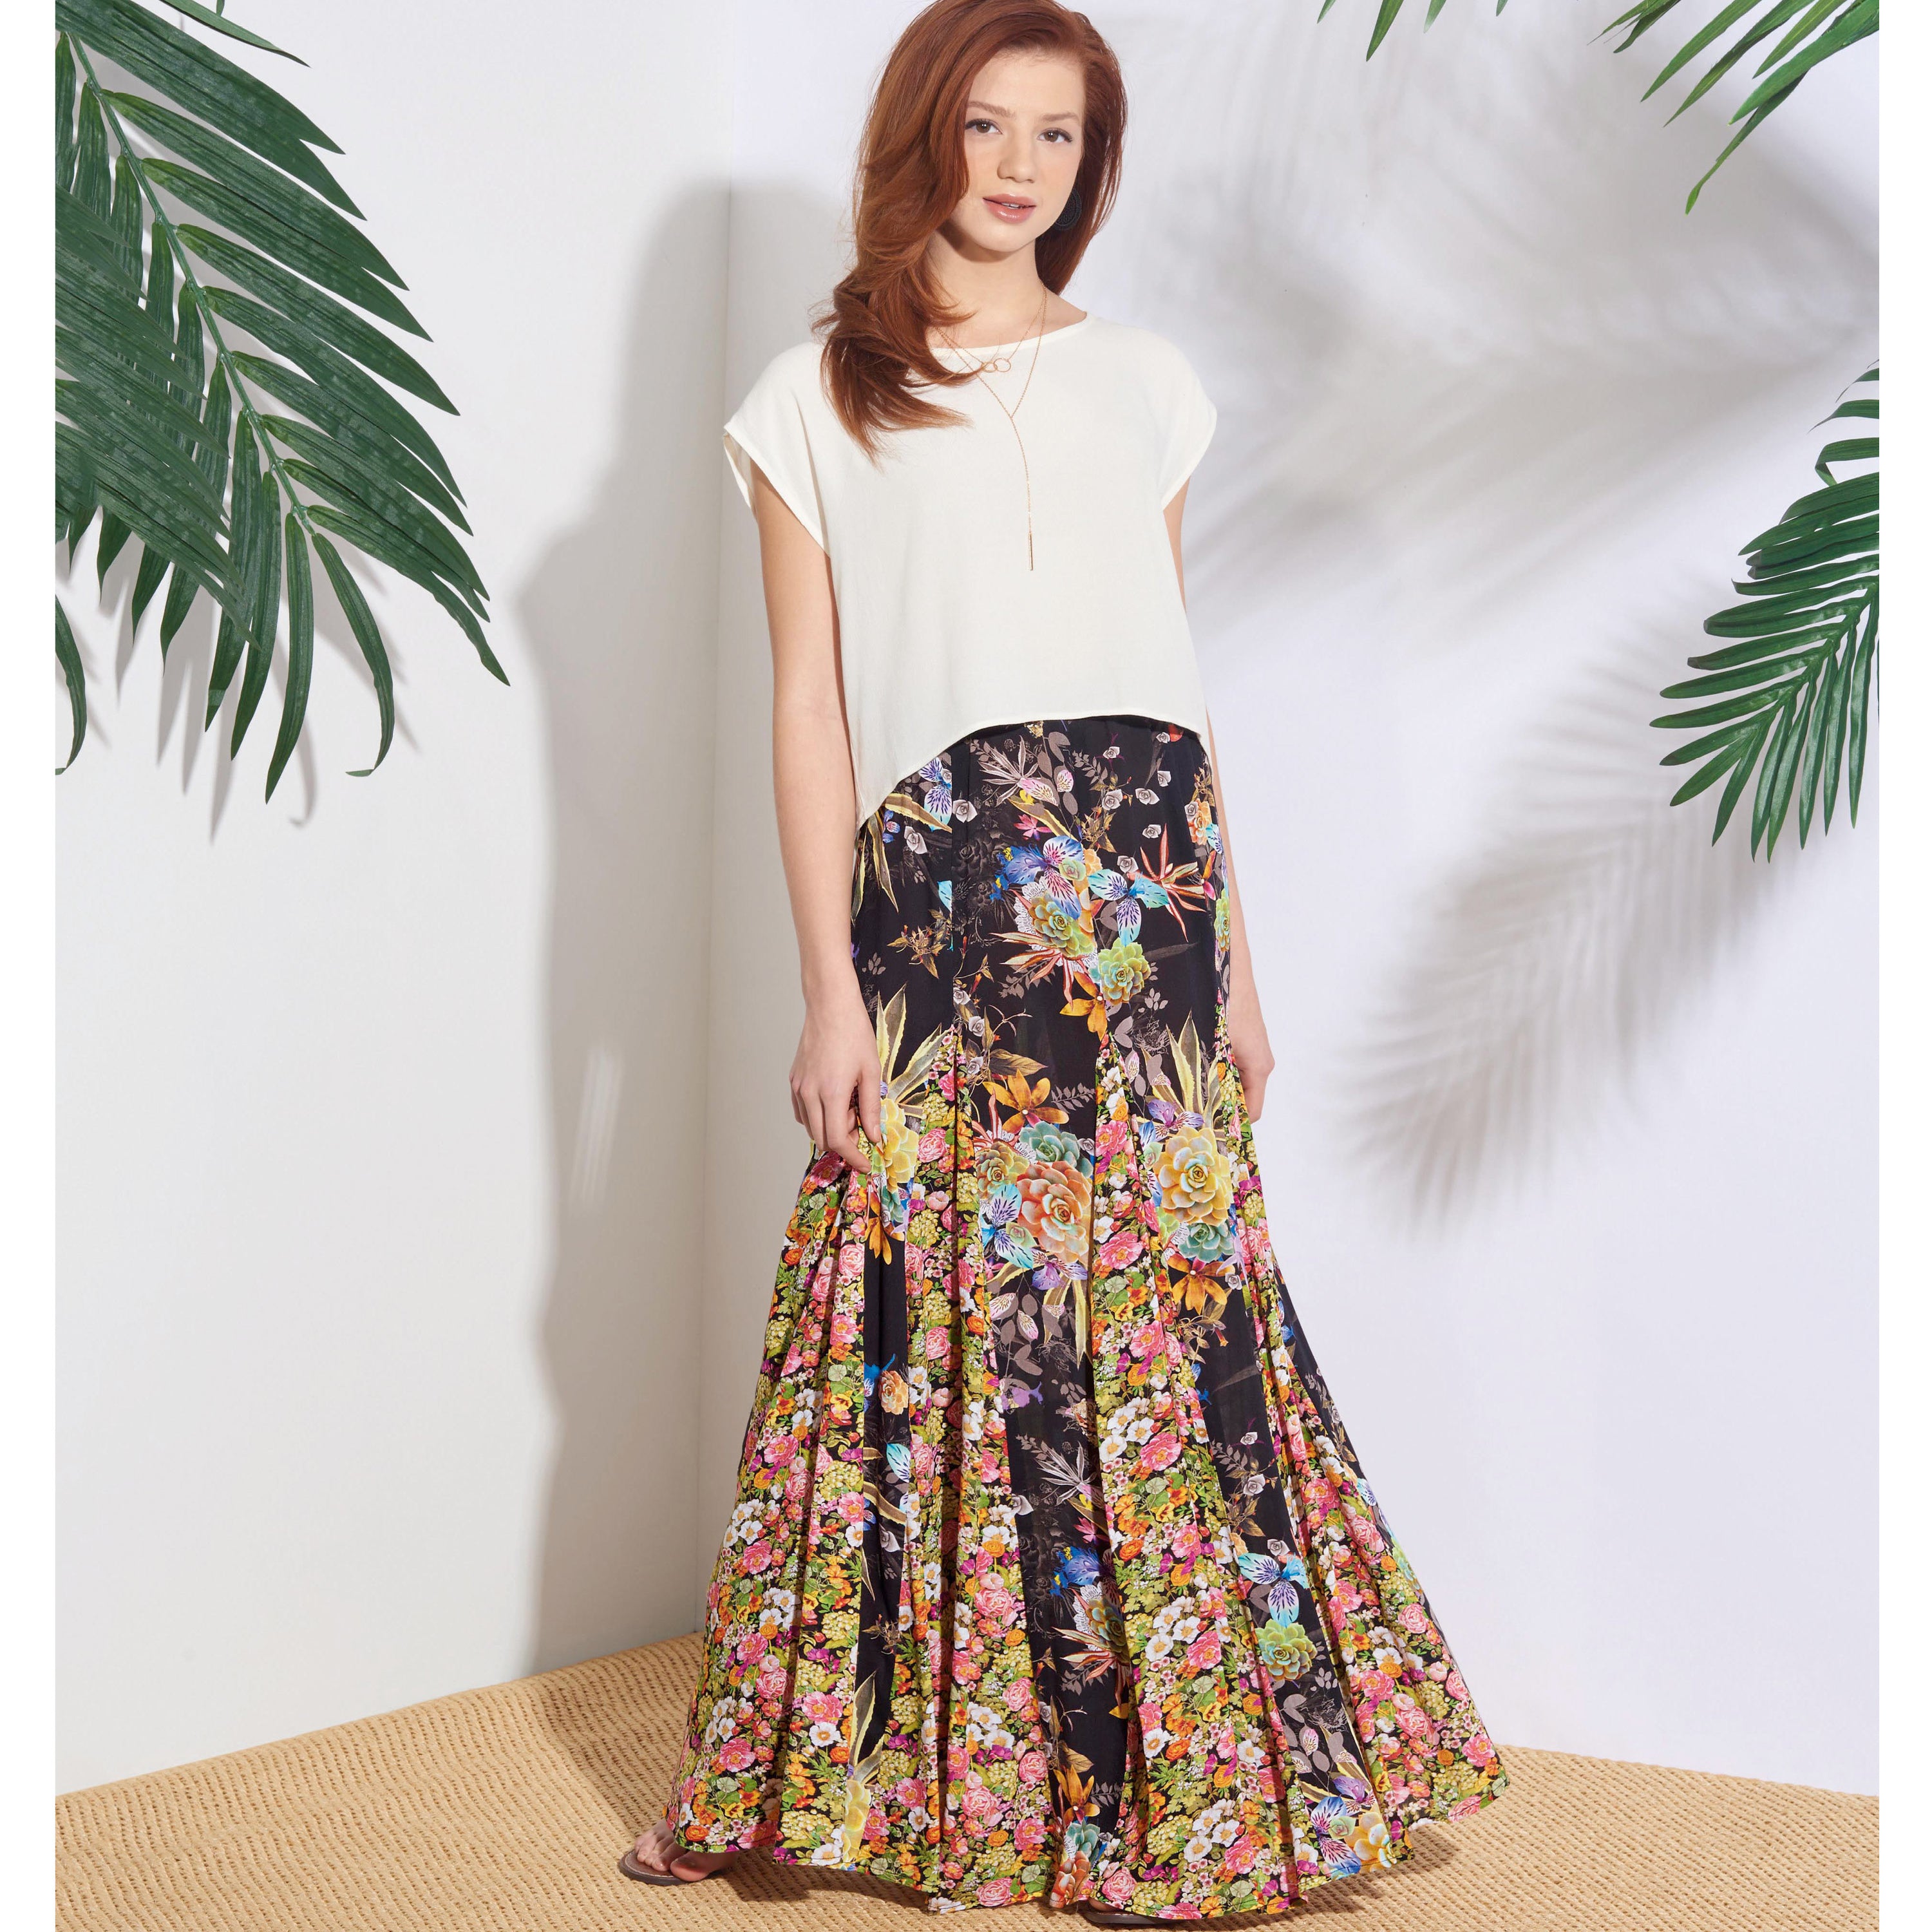 Adjustable Modest Skirts For Girls Denim Evelyn Style Skirt 47 OFF